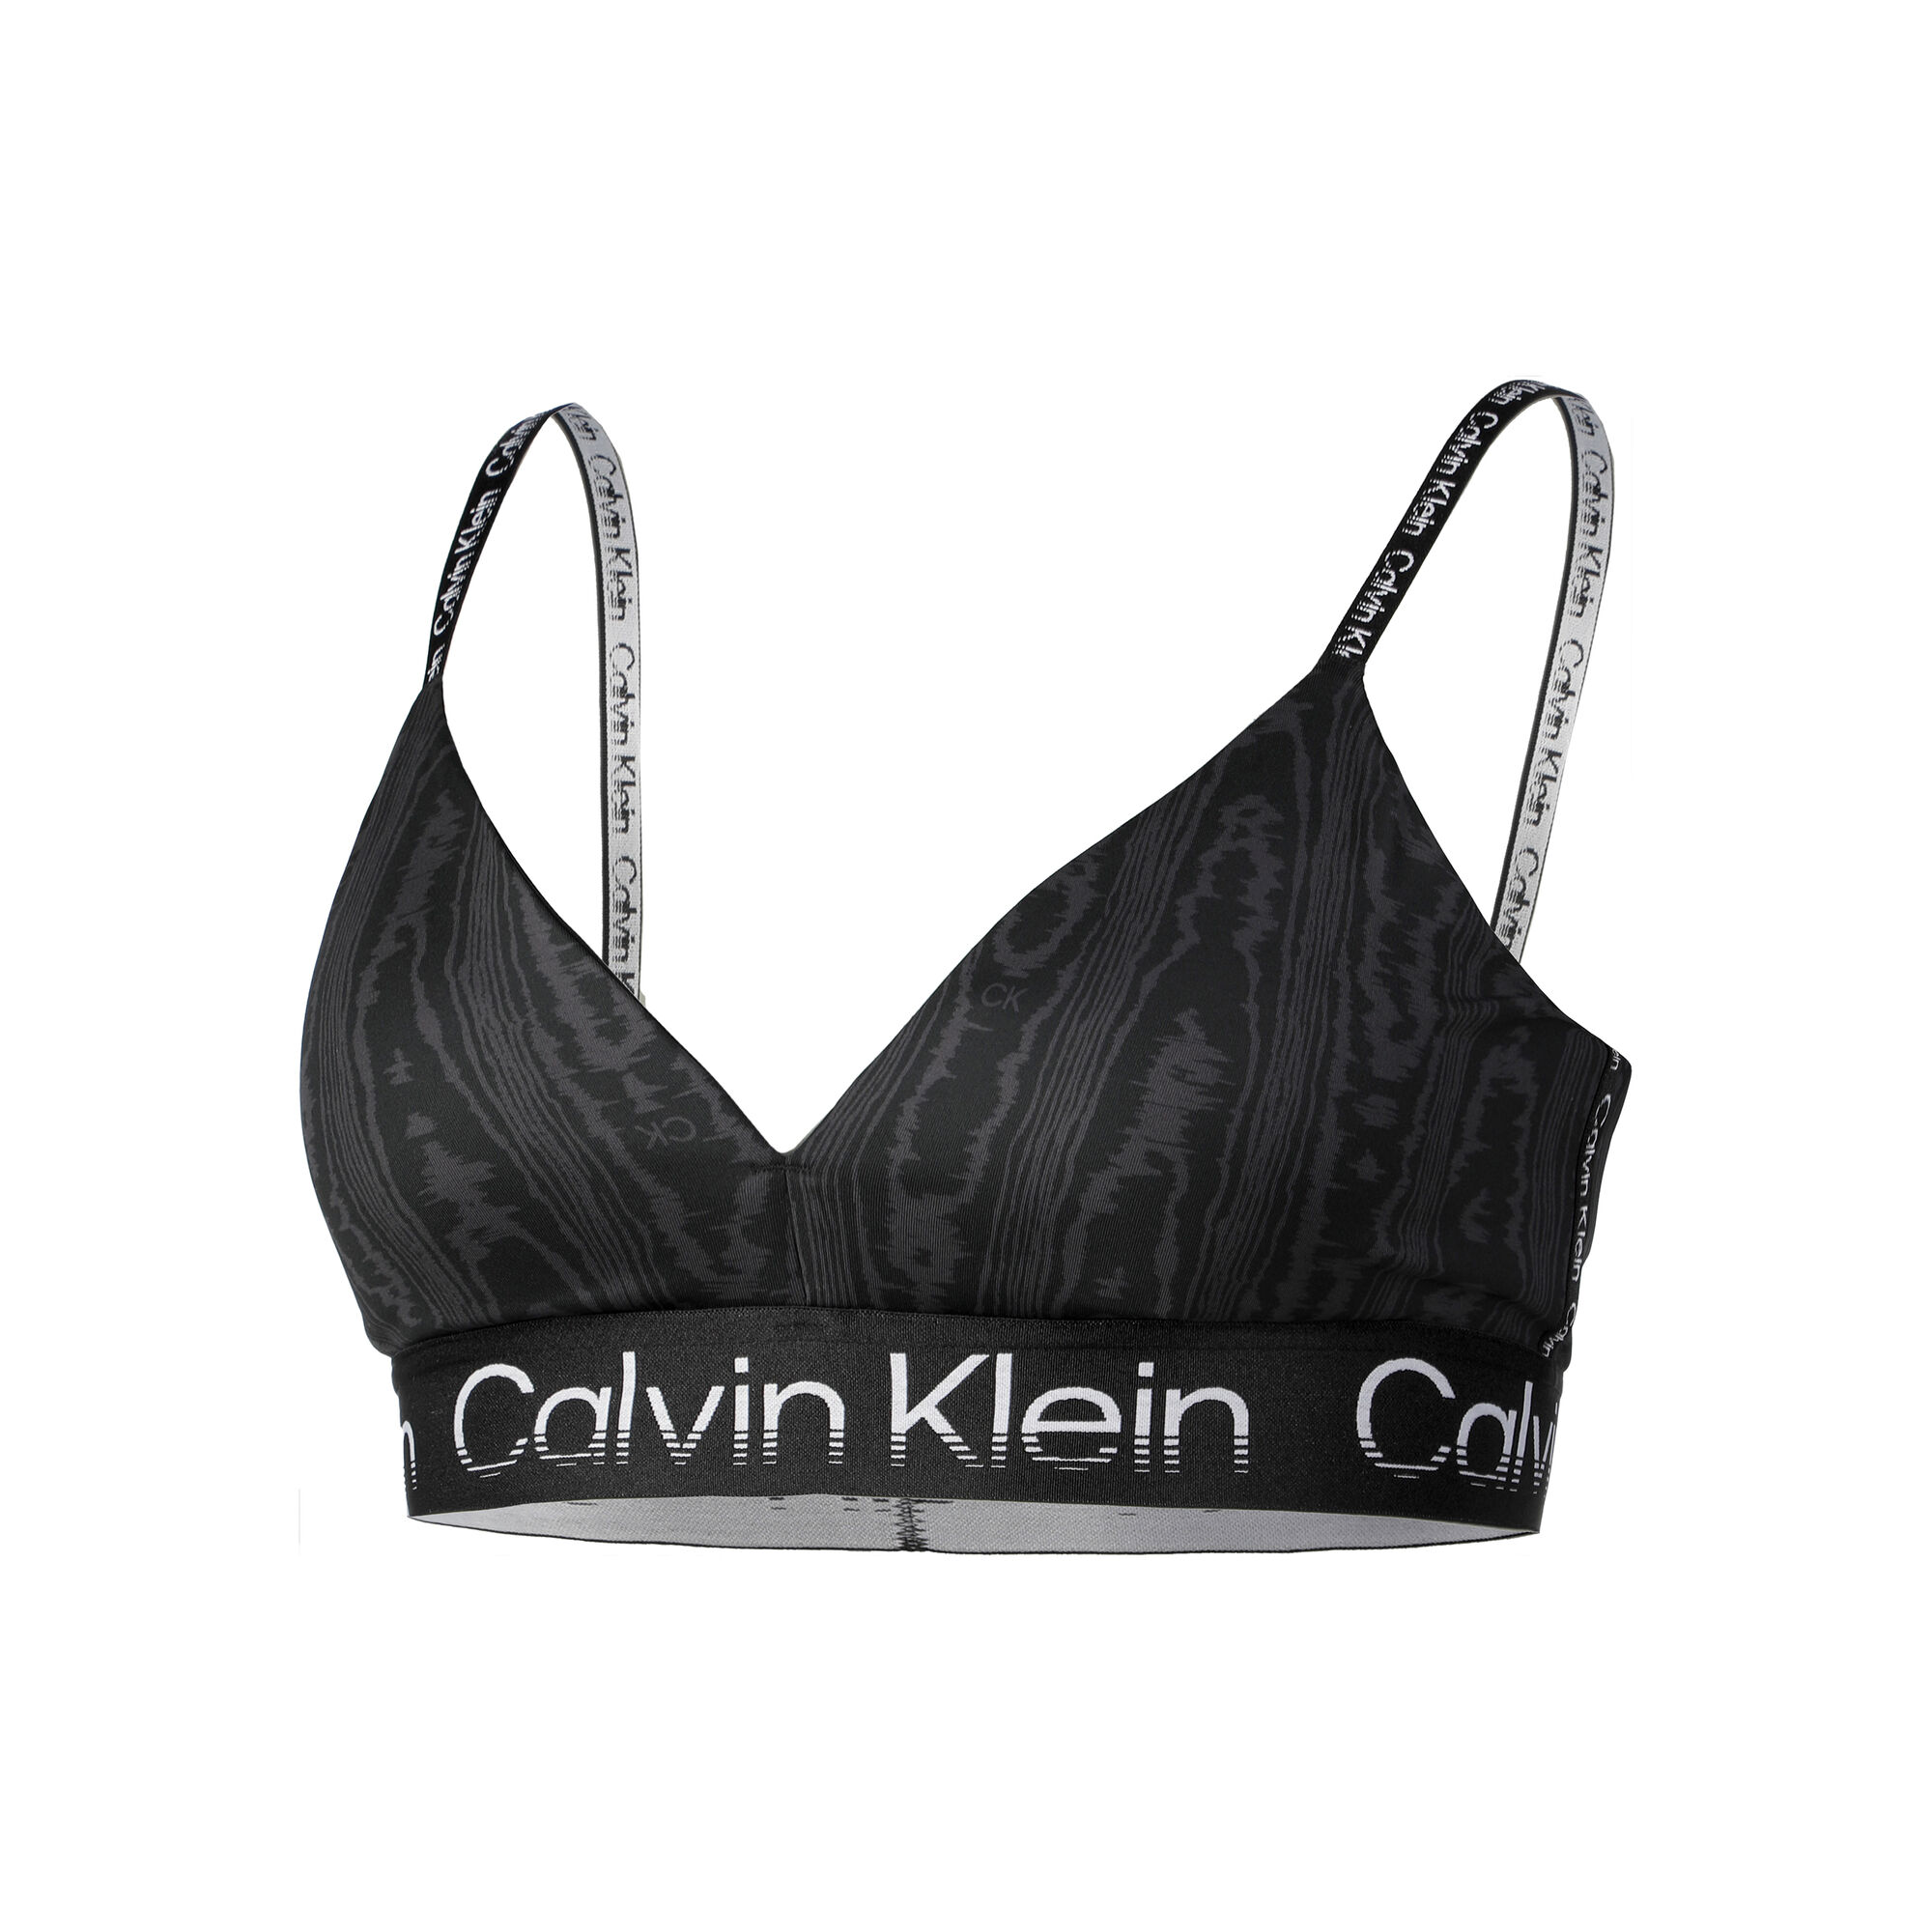 Women's bra Calvin Klein Low Support Sports Bra - black, Tennis Zone